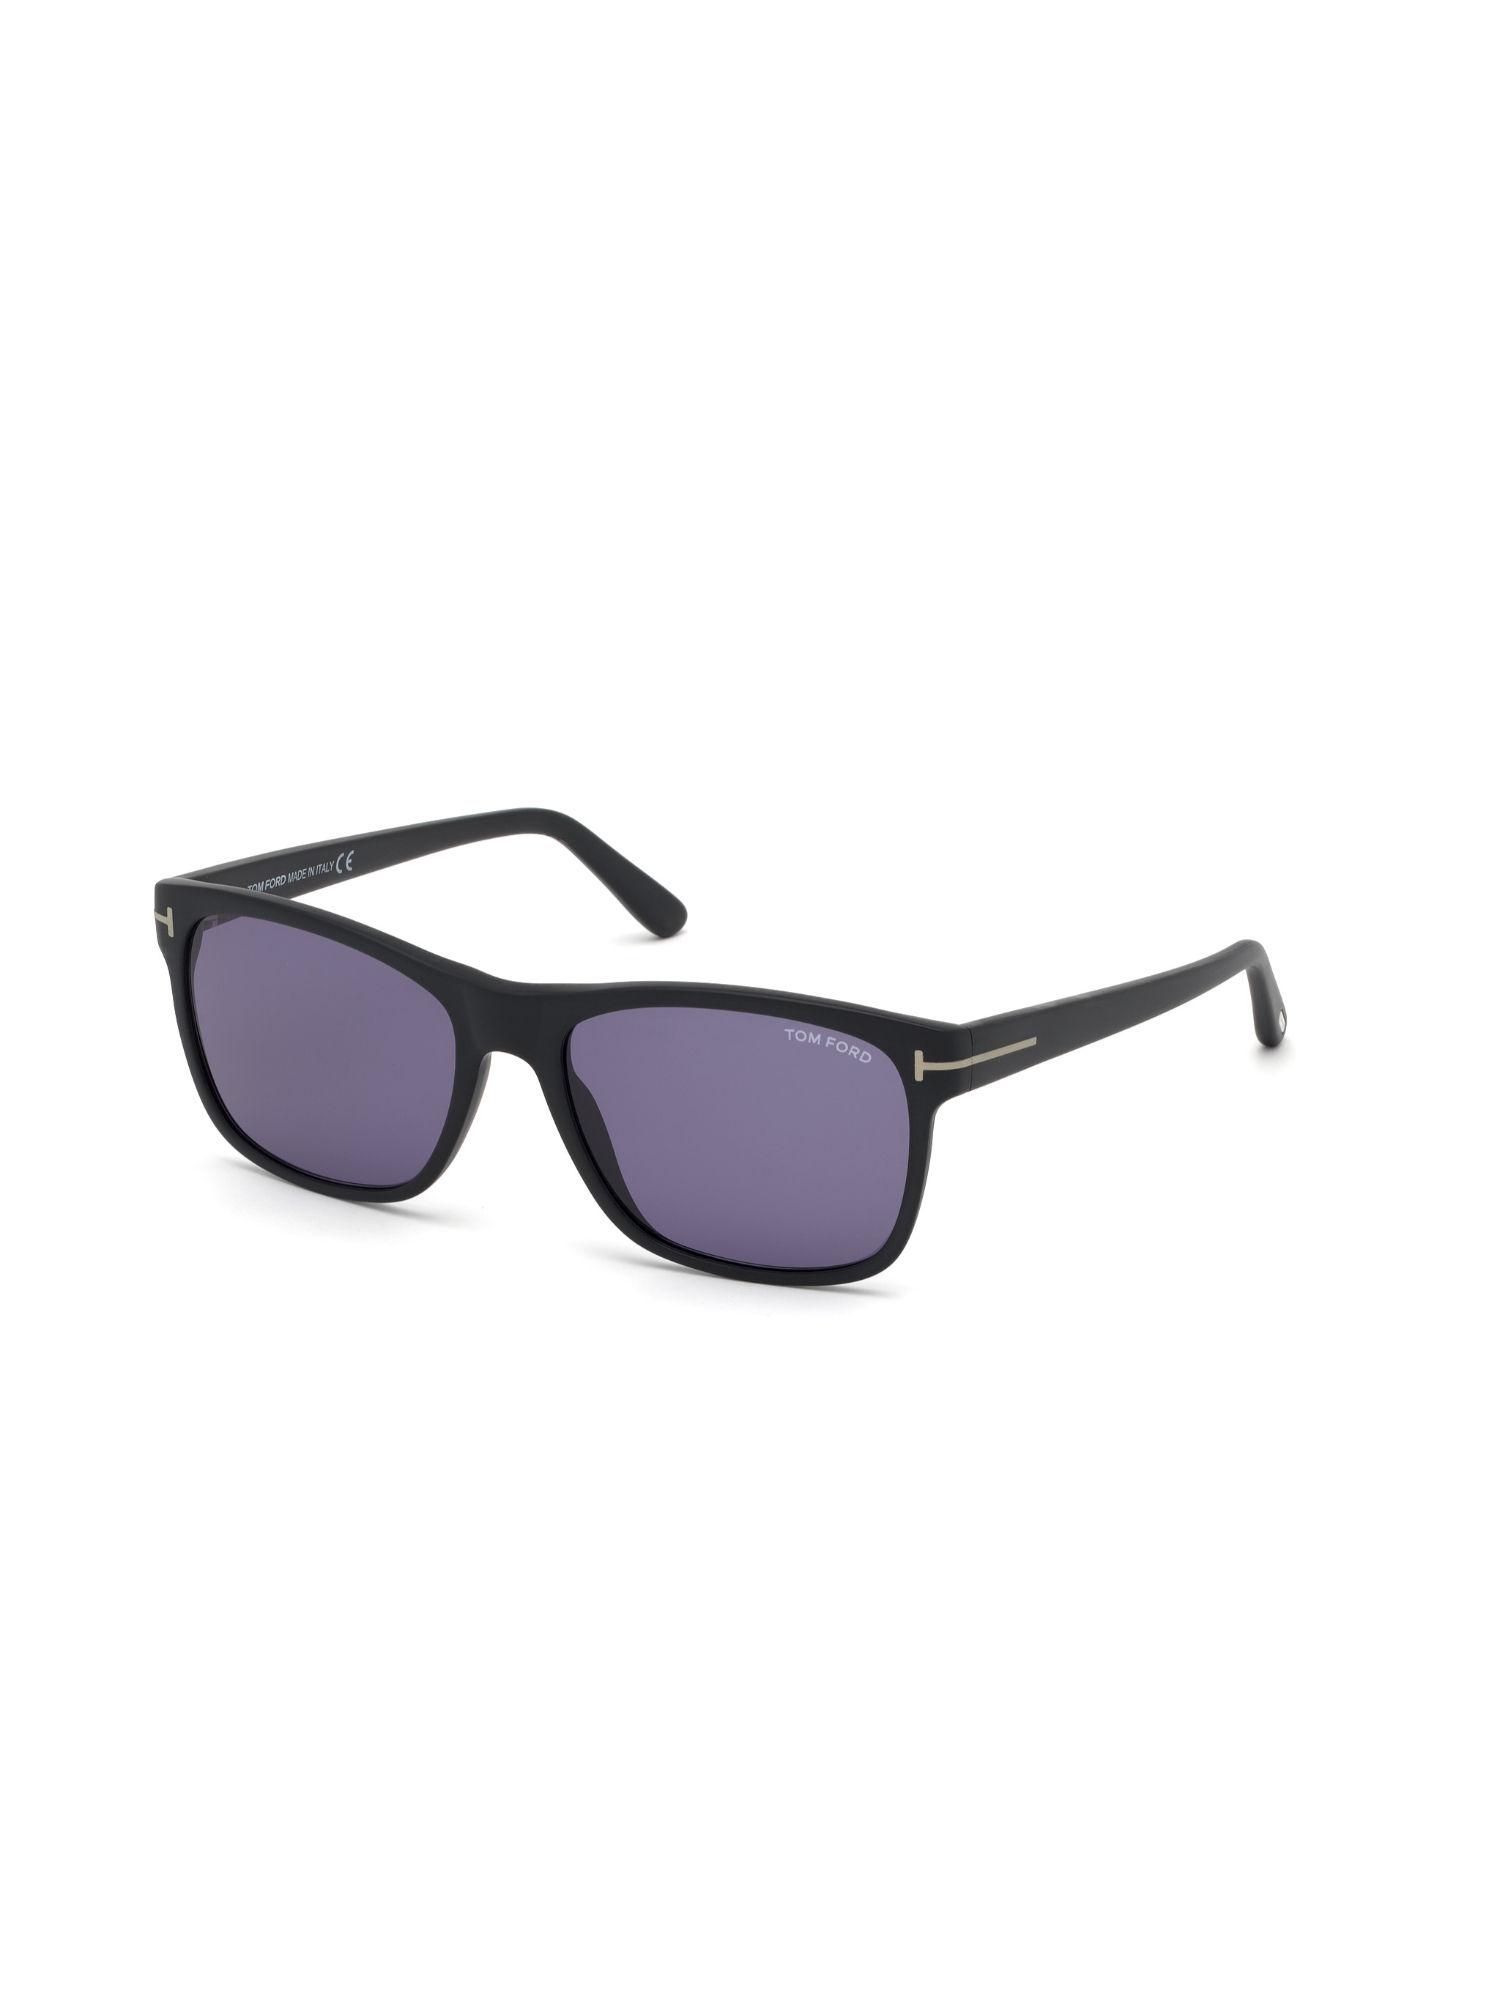 Tom Ford FT06985902V Square UV Protected Sunglasses for Men Purple (59)